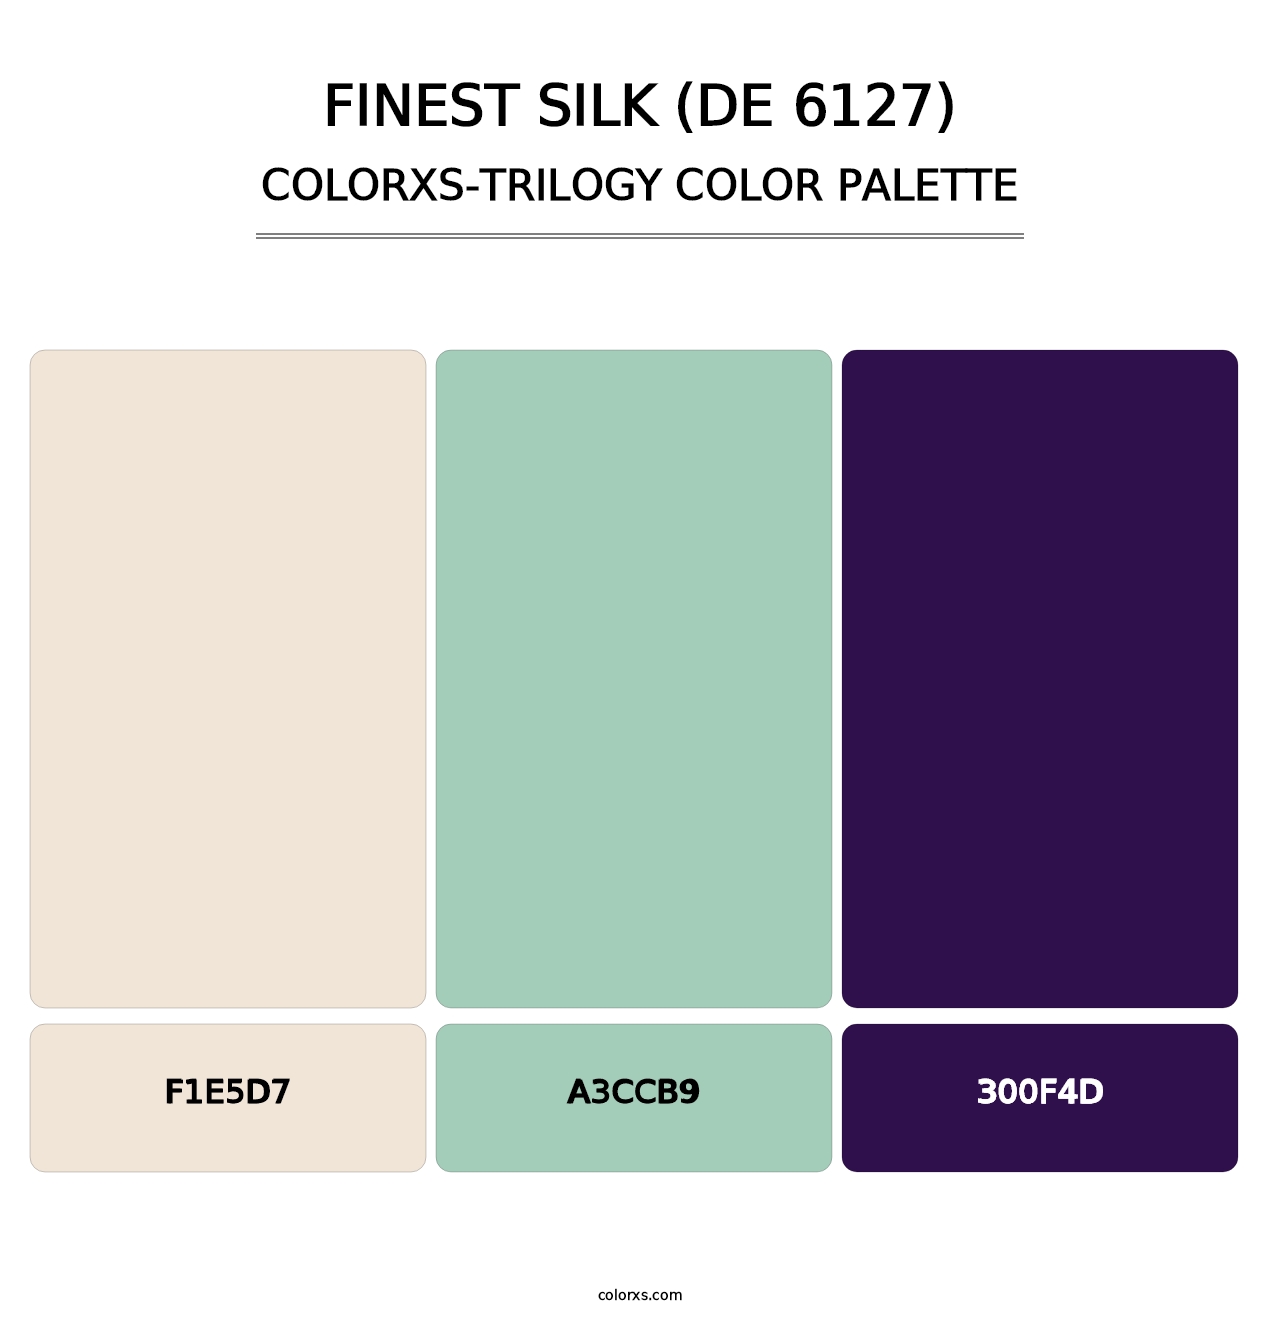 Finest Silk (DE 6127) - Colorxs Trilogy Palette